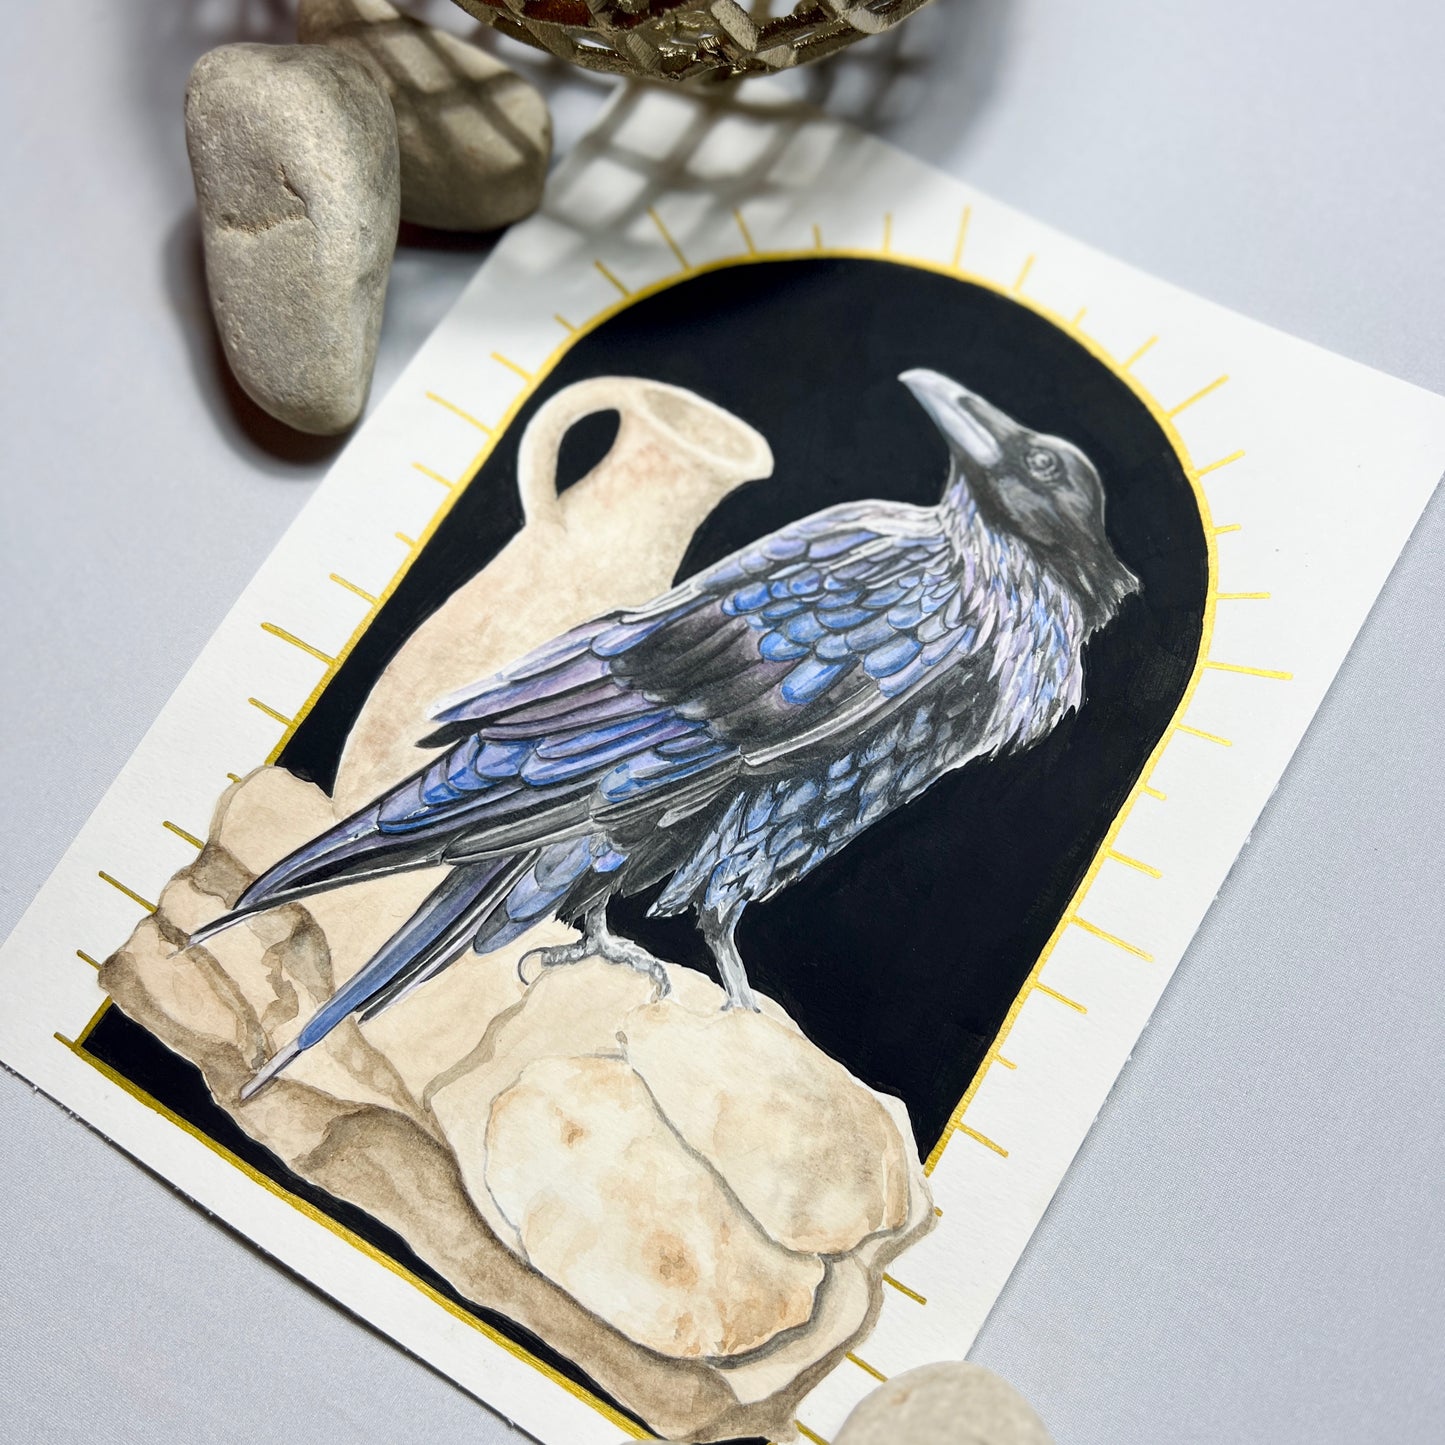 Raven Art Print - Cormac